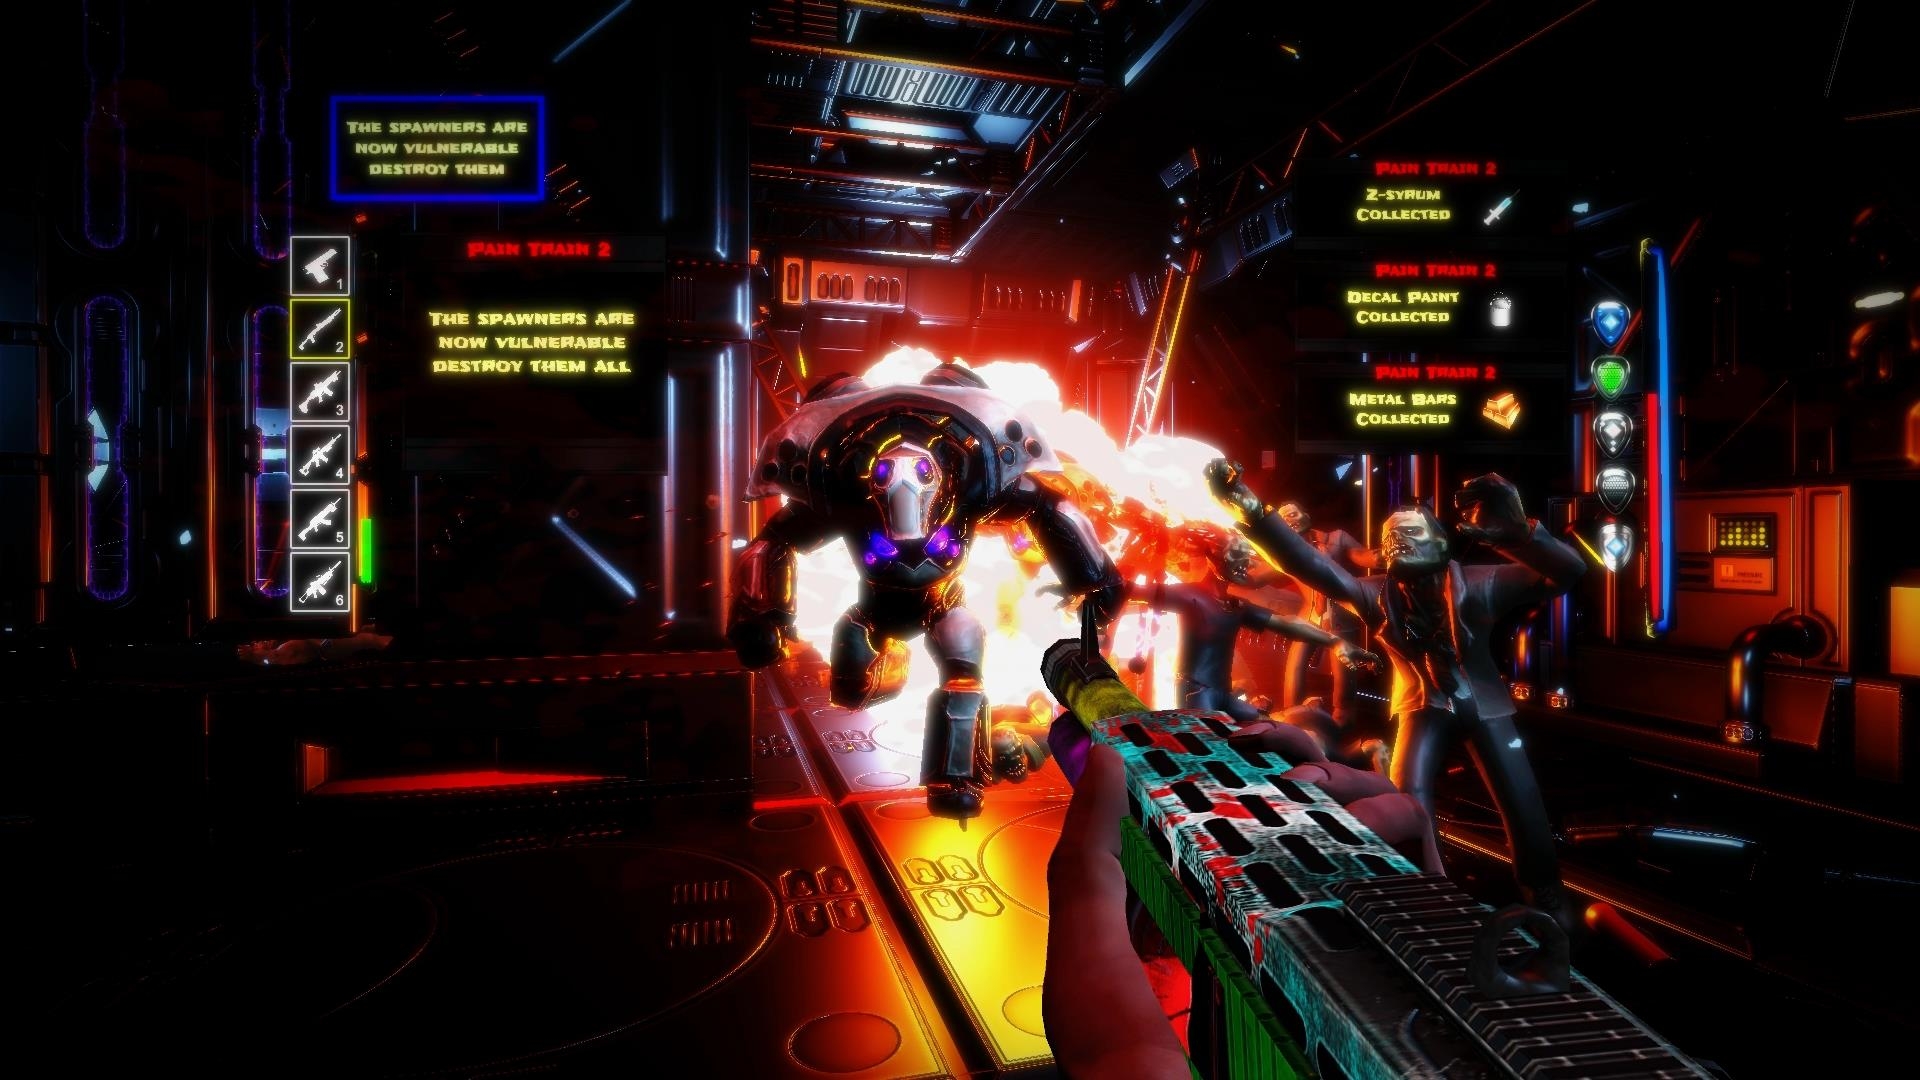 Скриншот из игры Pain Train 2 под номером 4